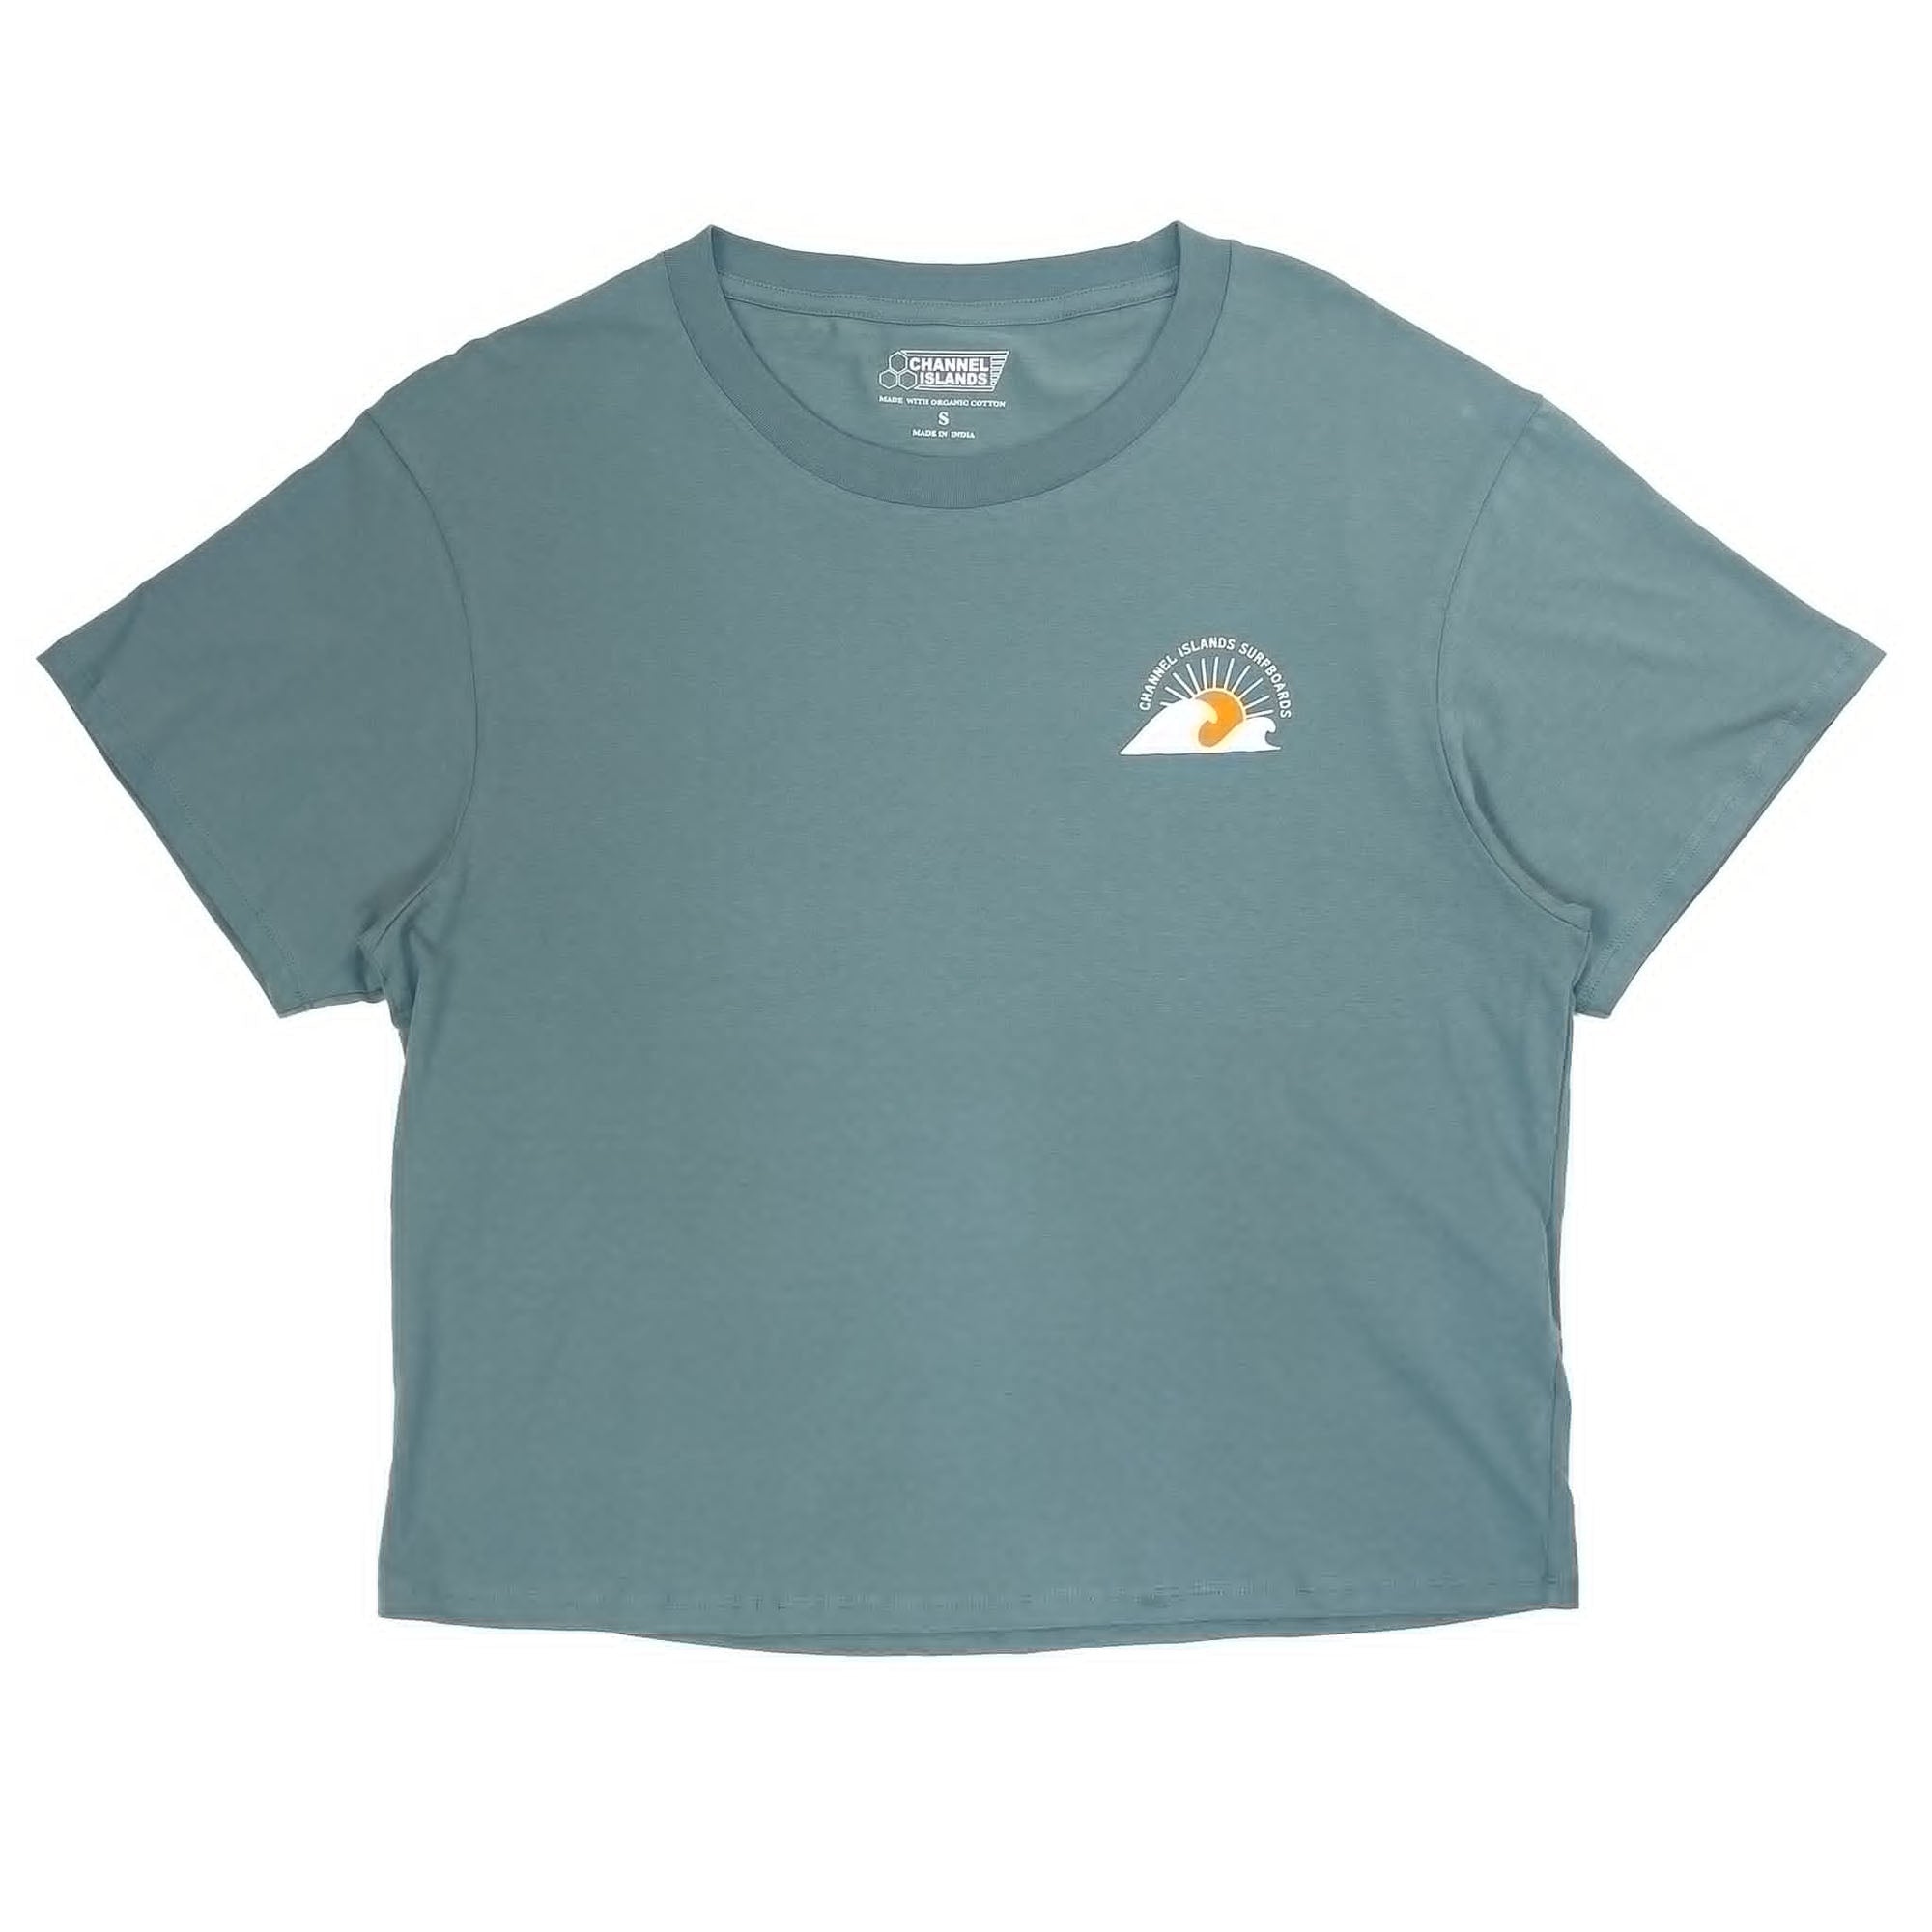 Channel Islands Waves Women's S/S T-Shirt